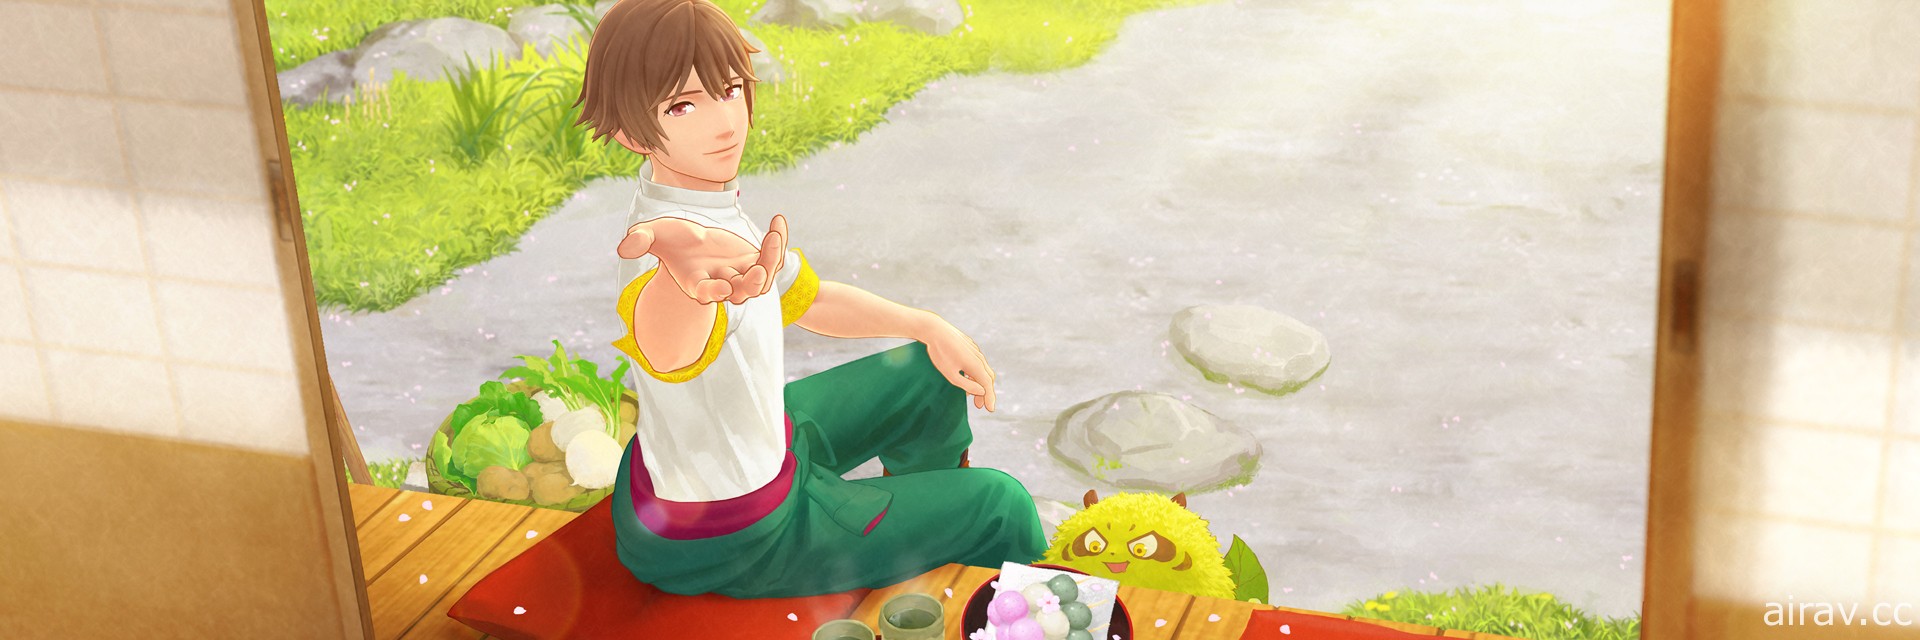 冒險遊戲《田園男子與小妖怪》於日本推出 在田園間體驗人與小妖怪的療癒生活